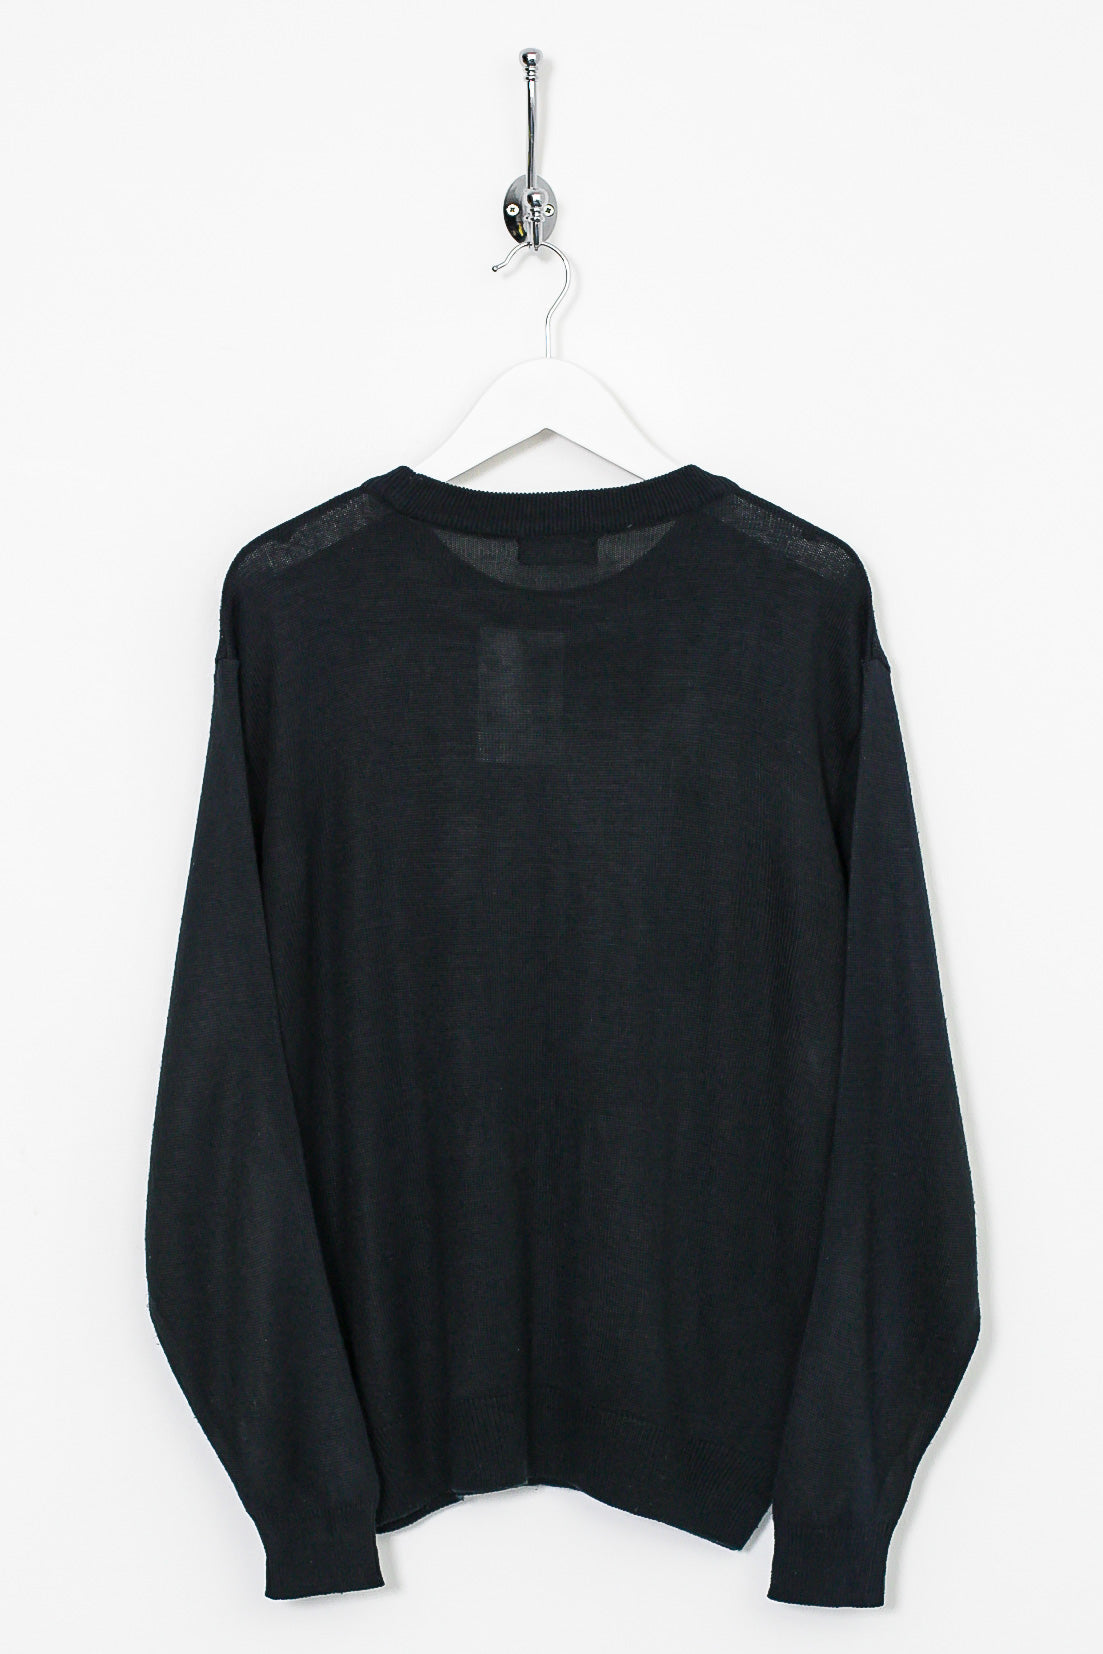 90s Versace Knit Sweatshirt (S)